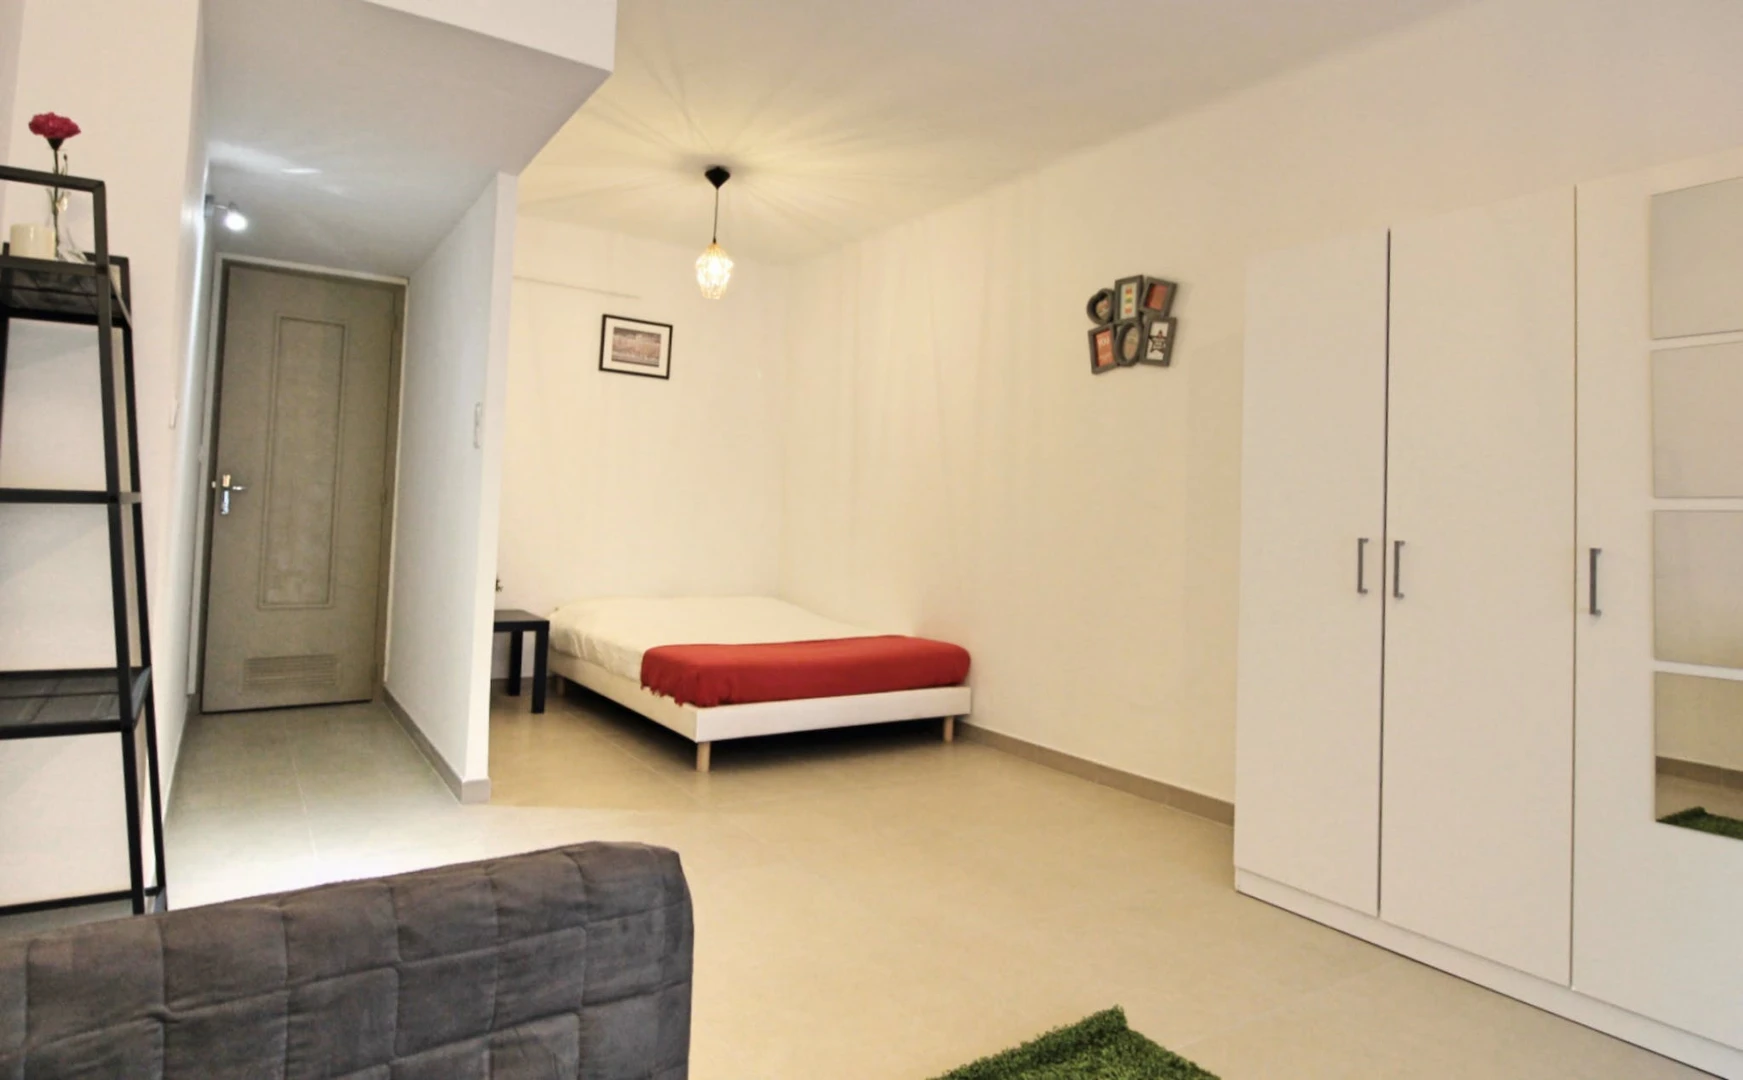 Zimmer mit Doppelbett zu vermieten Marseille